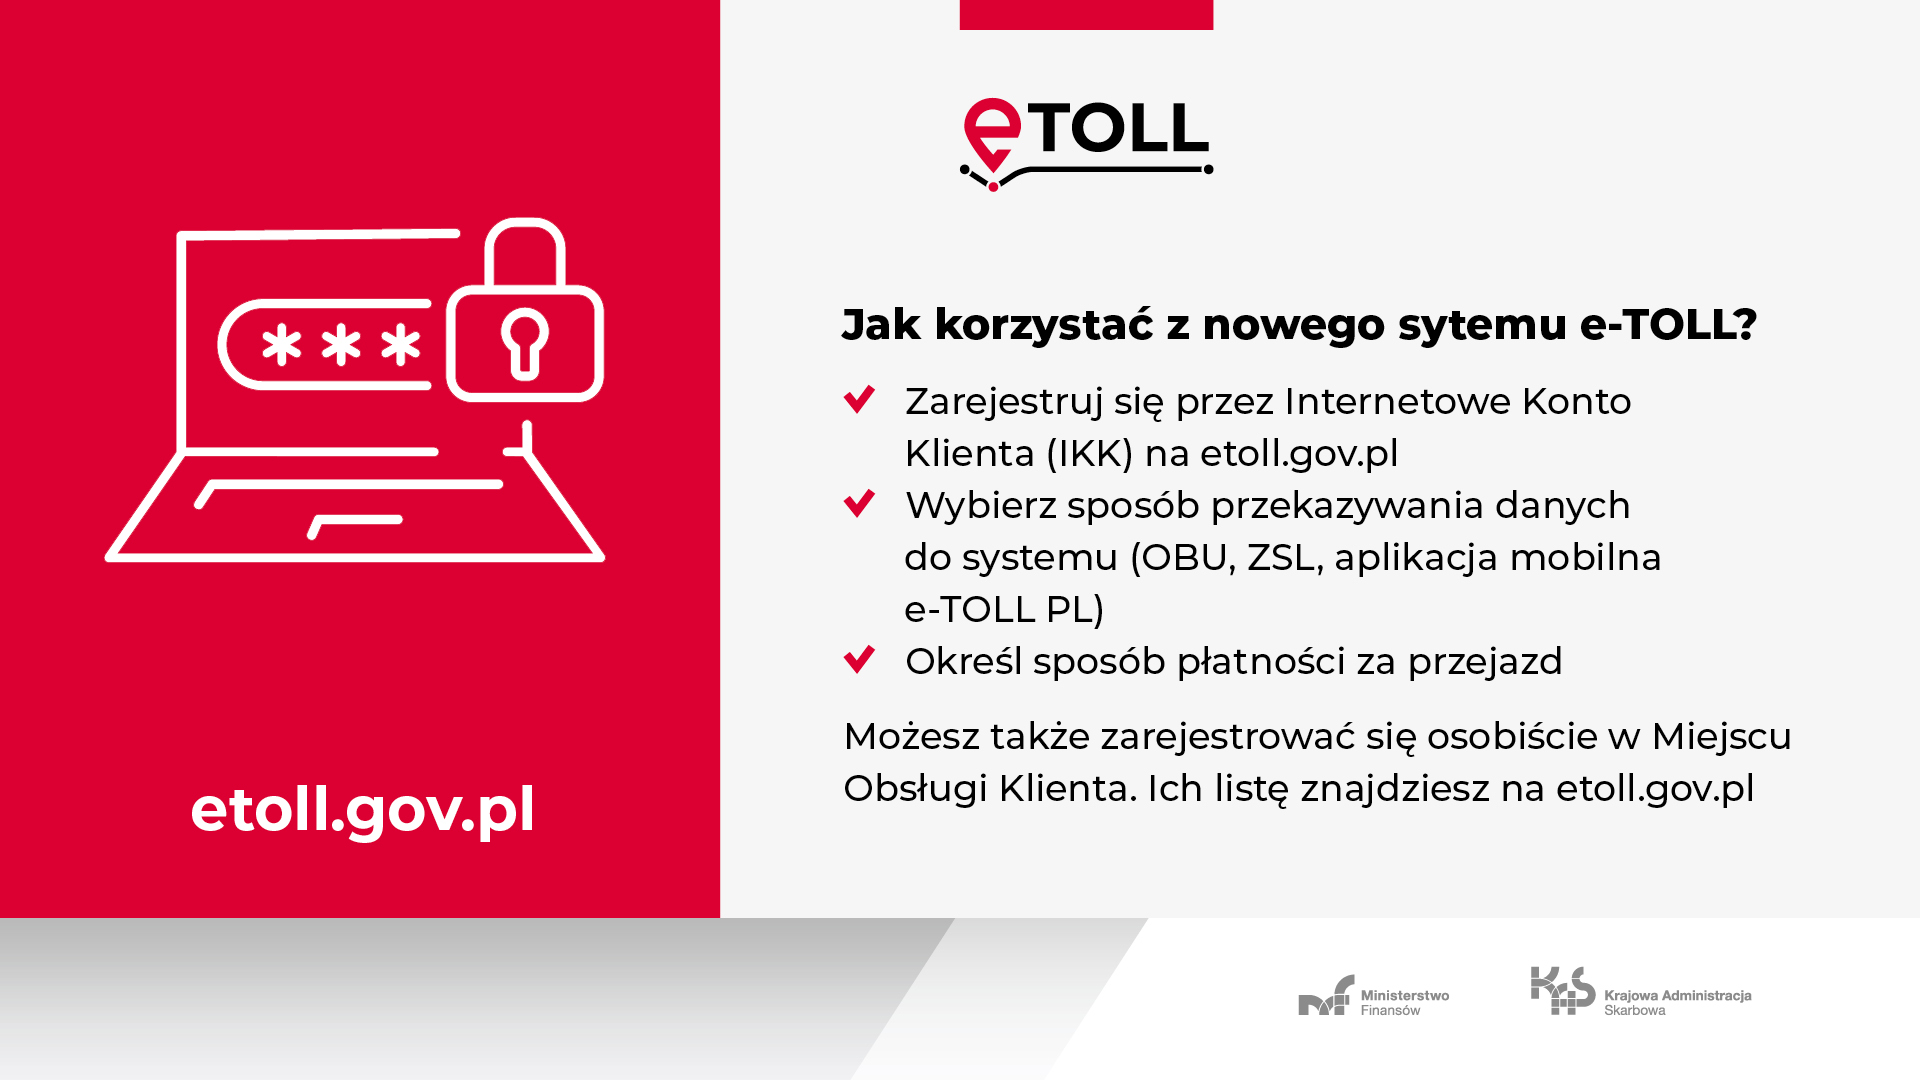 Czerwono-biała grafika. Na czerwonym tle rysunek laptopa i napis: etoll.gov.pl. Na białym tle logo eTOLL i napisy.